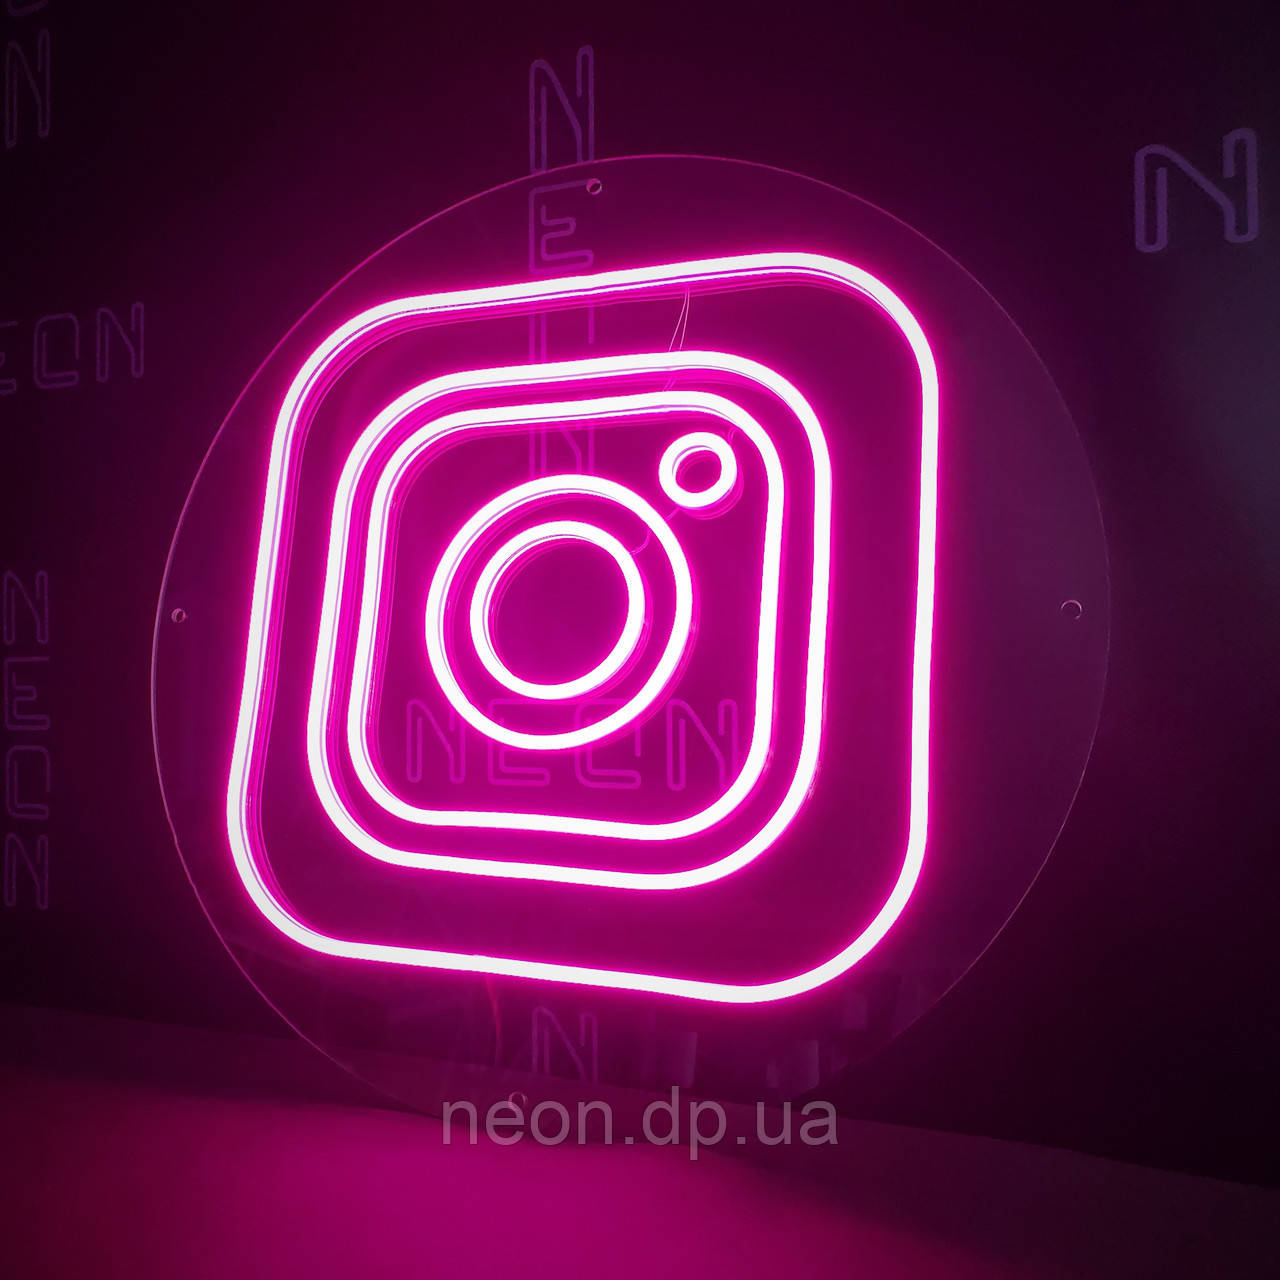 Неонова вивіска "Instagram"